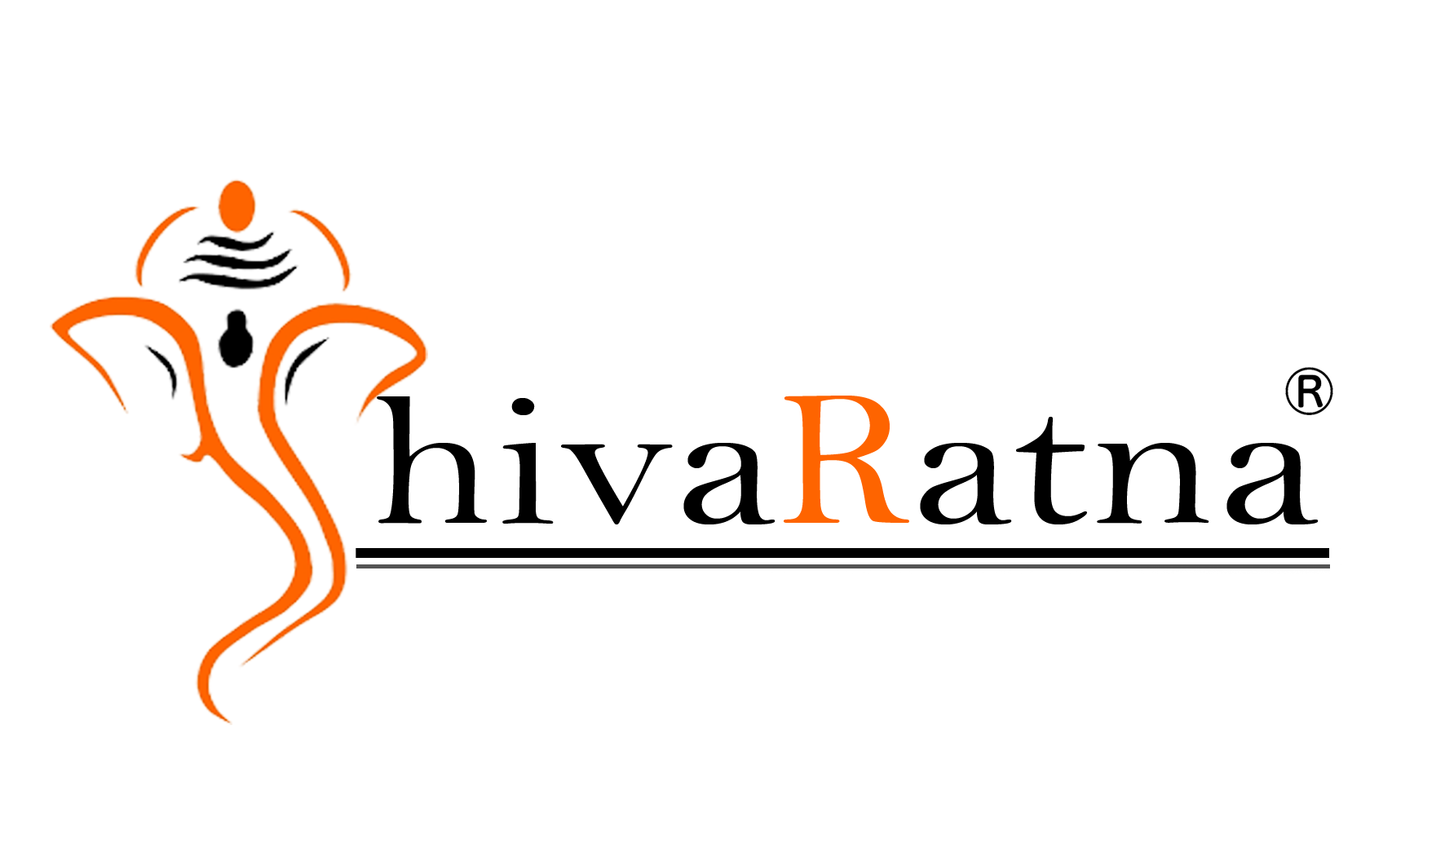 ShivaRatna 100% Natural Unpolished Karungali Malai Original Lab Certified -  Premium Beads 8mm -  கருங்காலி மாலை